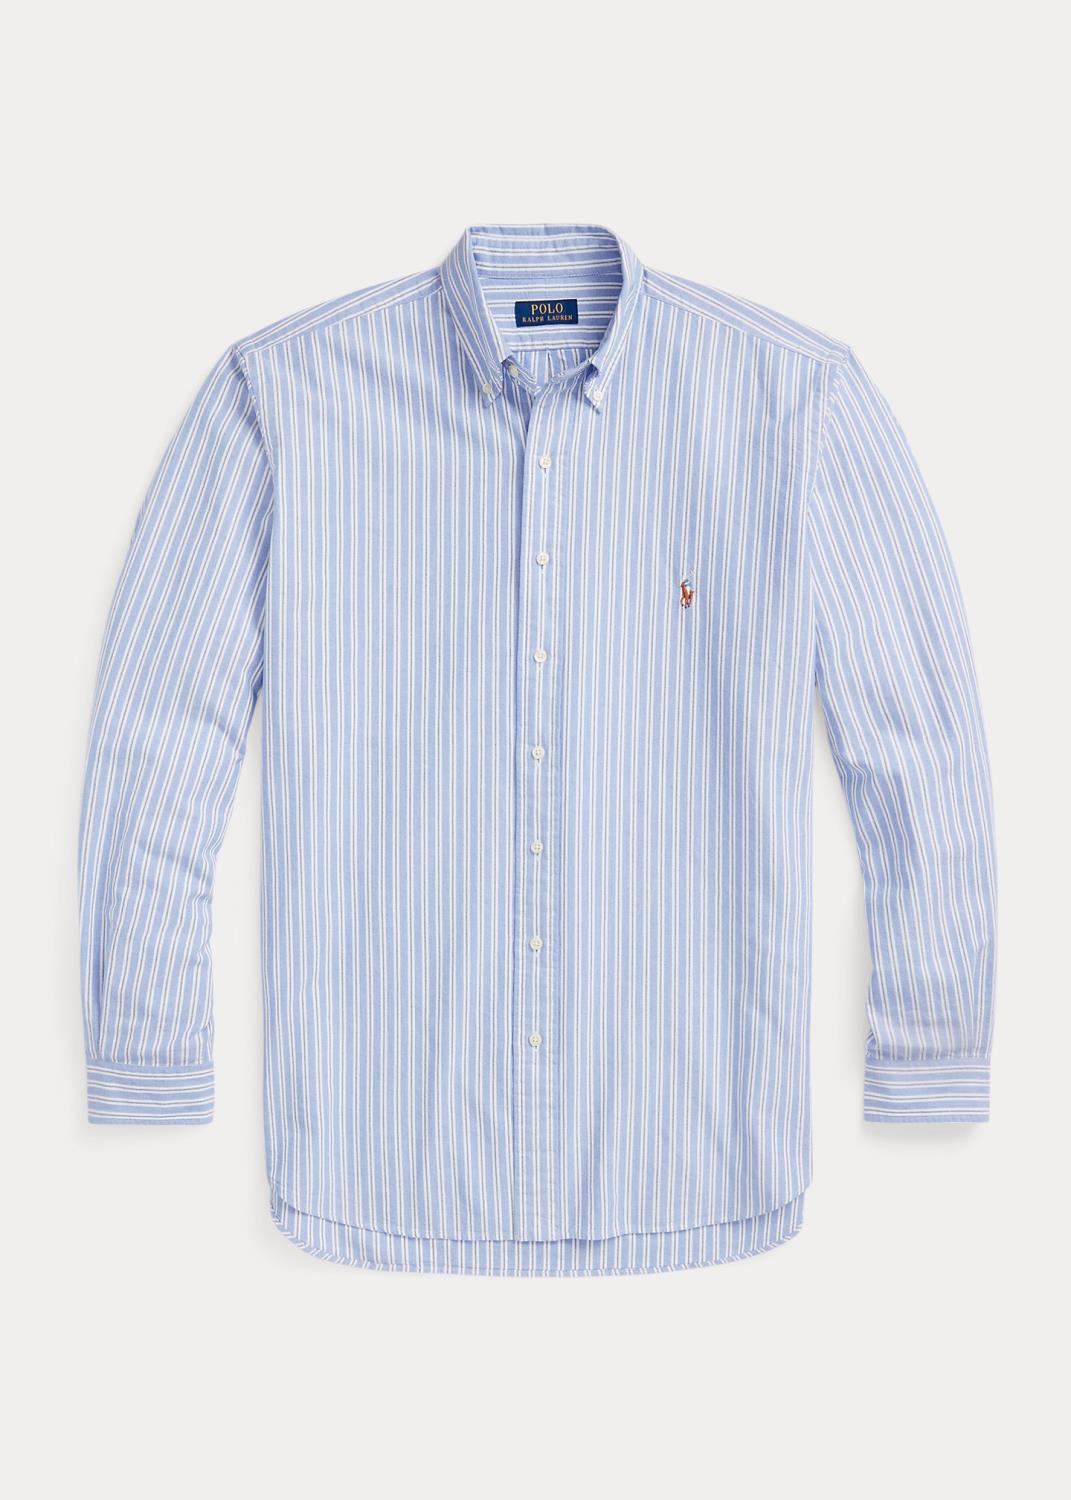 Polo Ralph Lauren Shirt Striped Blue White